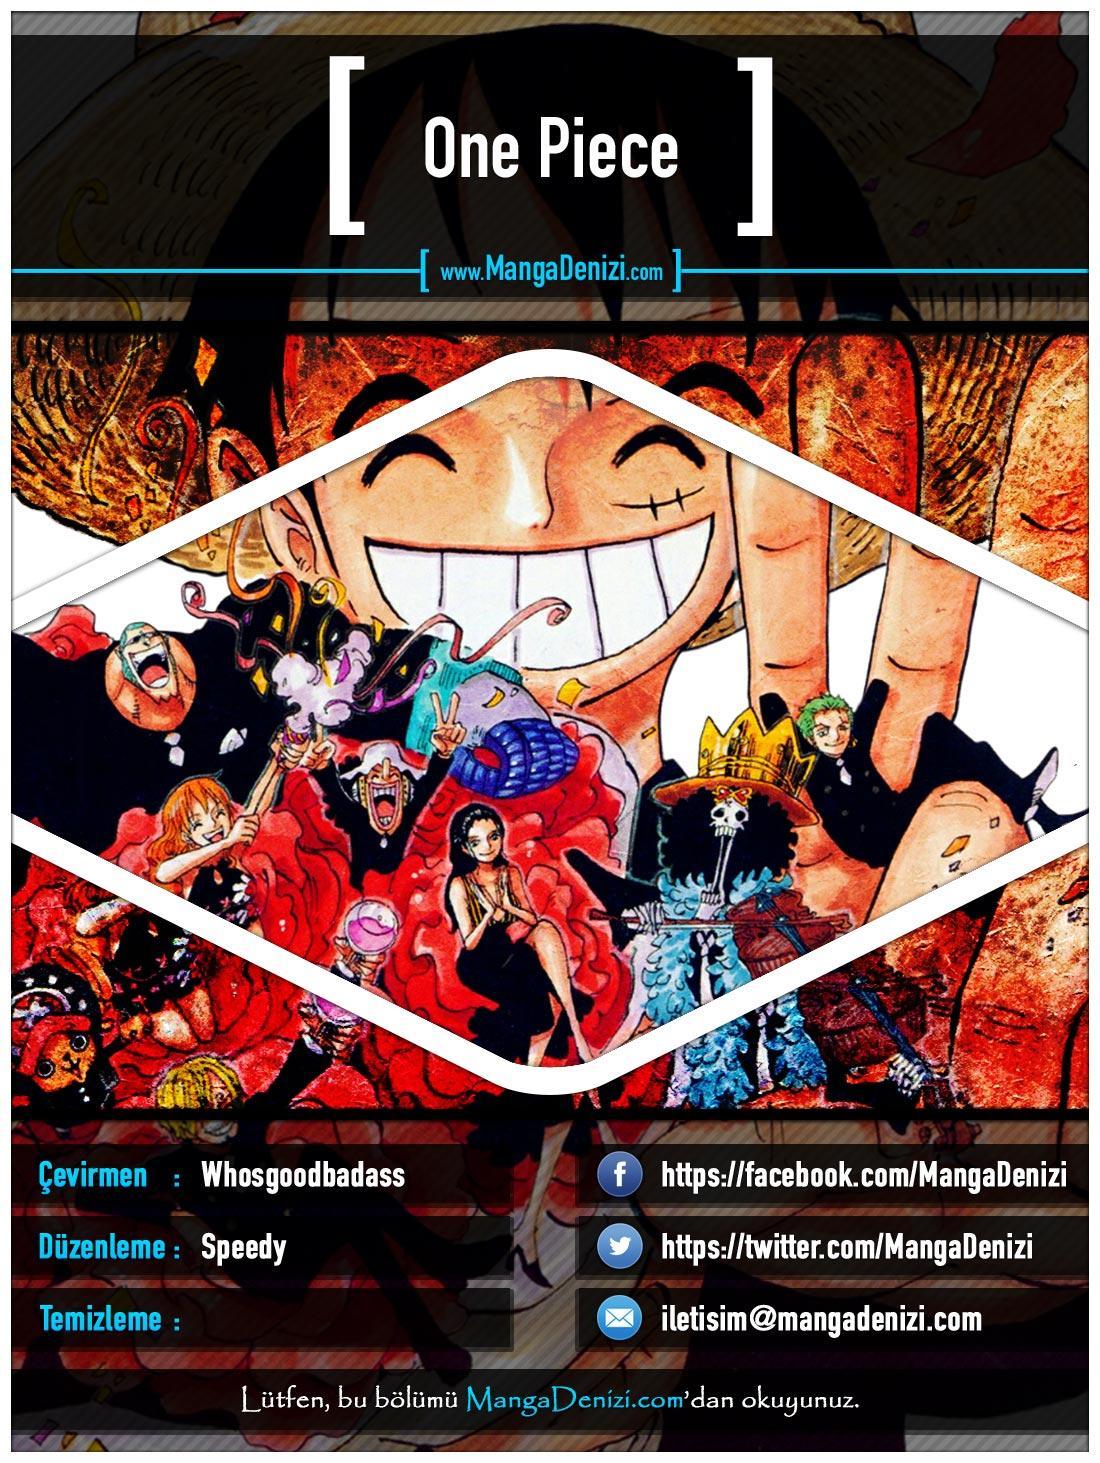 One Piece [Renkli] mangasının 0459 bölümünün 1. sayfasını okuyorsunuz.